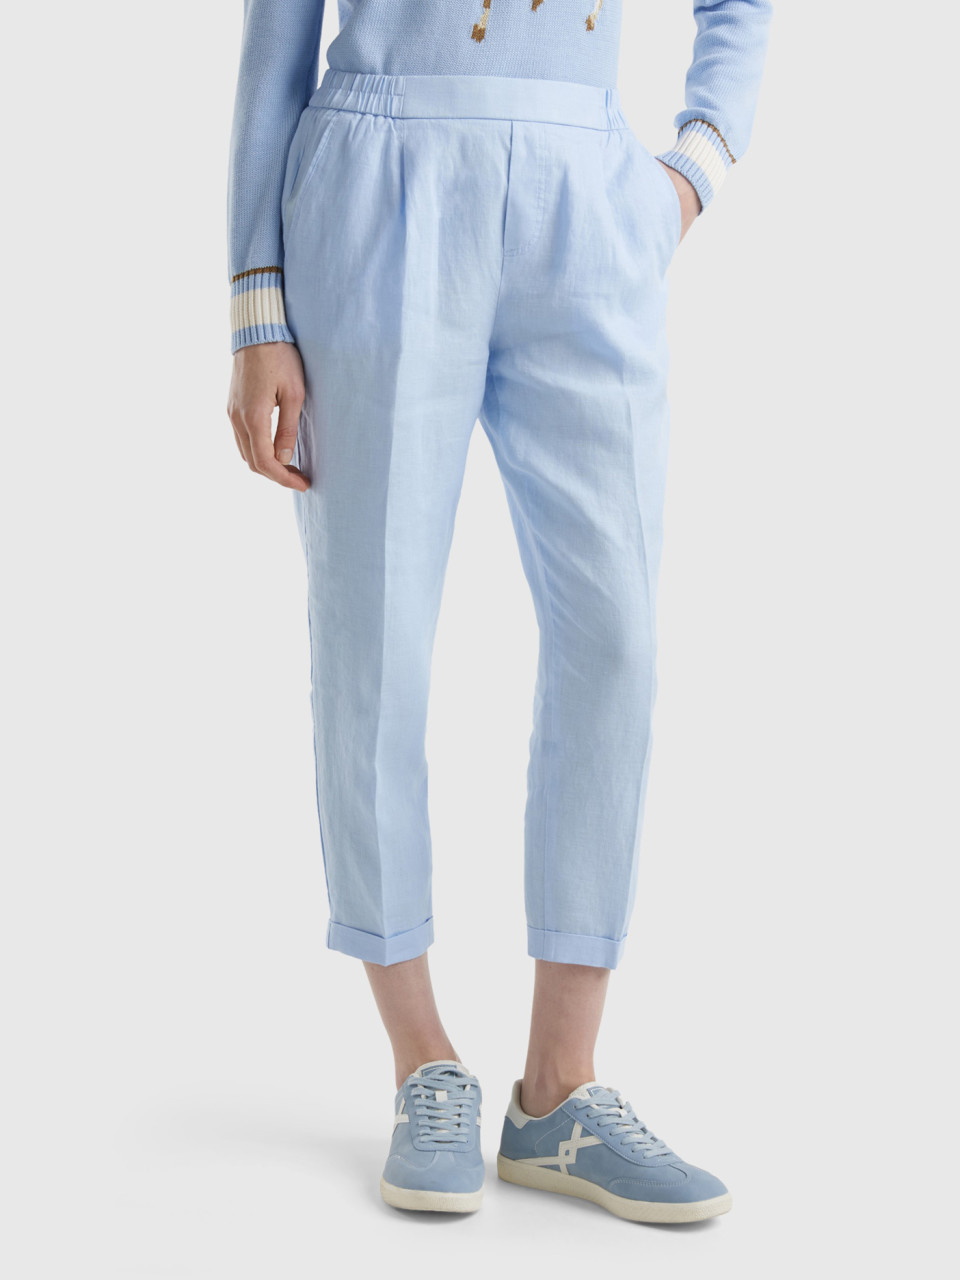 Benetton, Cropped Trousers In 100% Linen, Sky Blue, Women